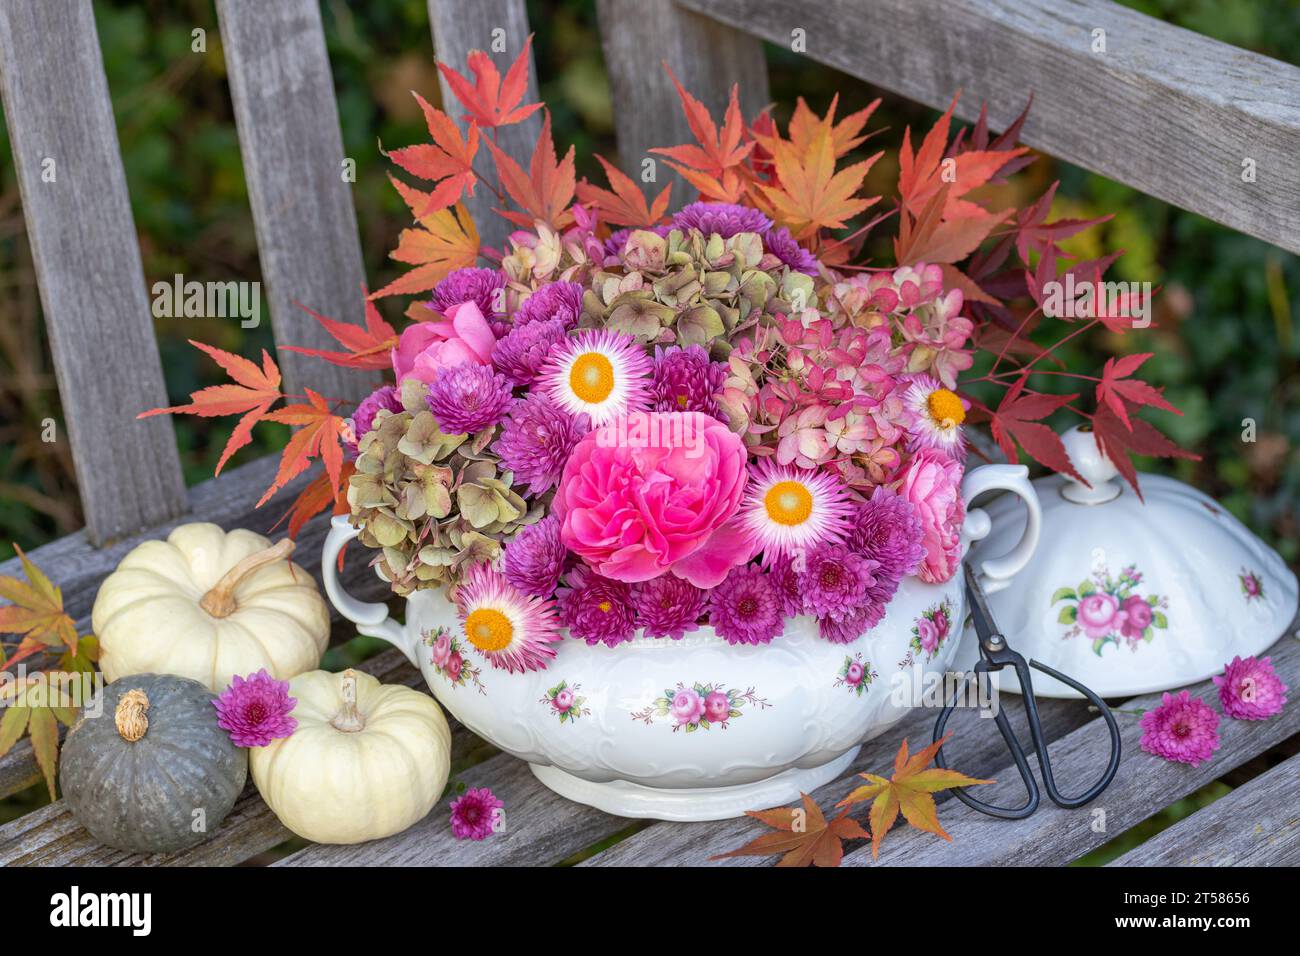 arrangement de fleurs de roses roses, fleurs d'hortensia, chrysanthèmes et feuilles d'érable dans la soupes vintage Banque D'Images